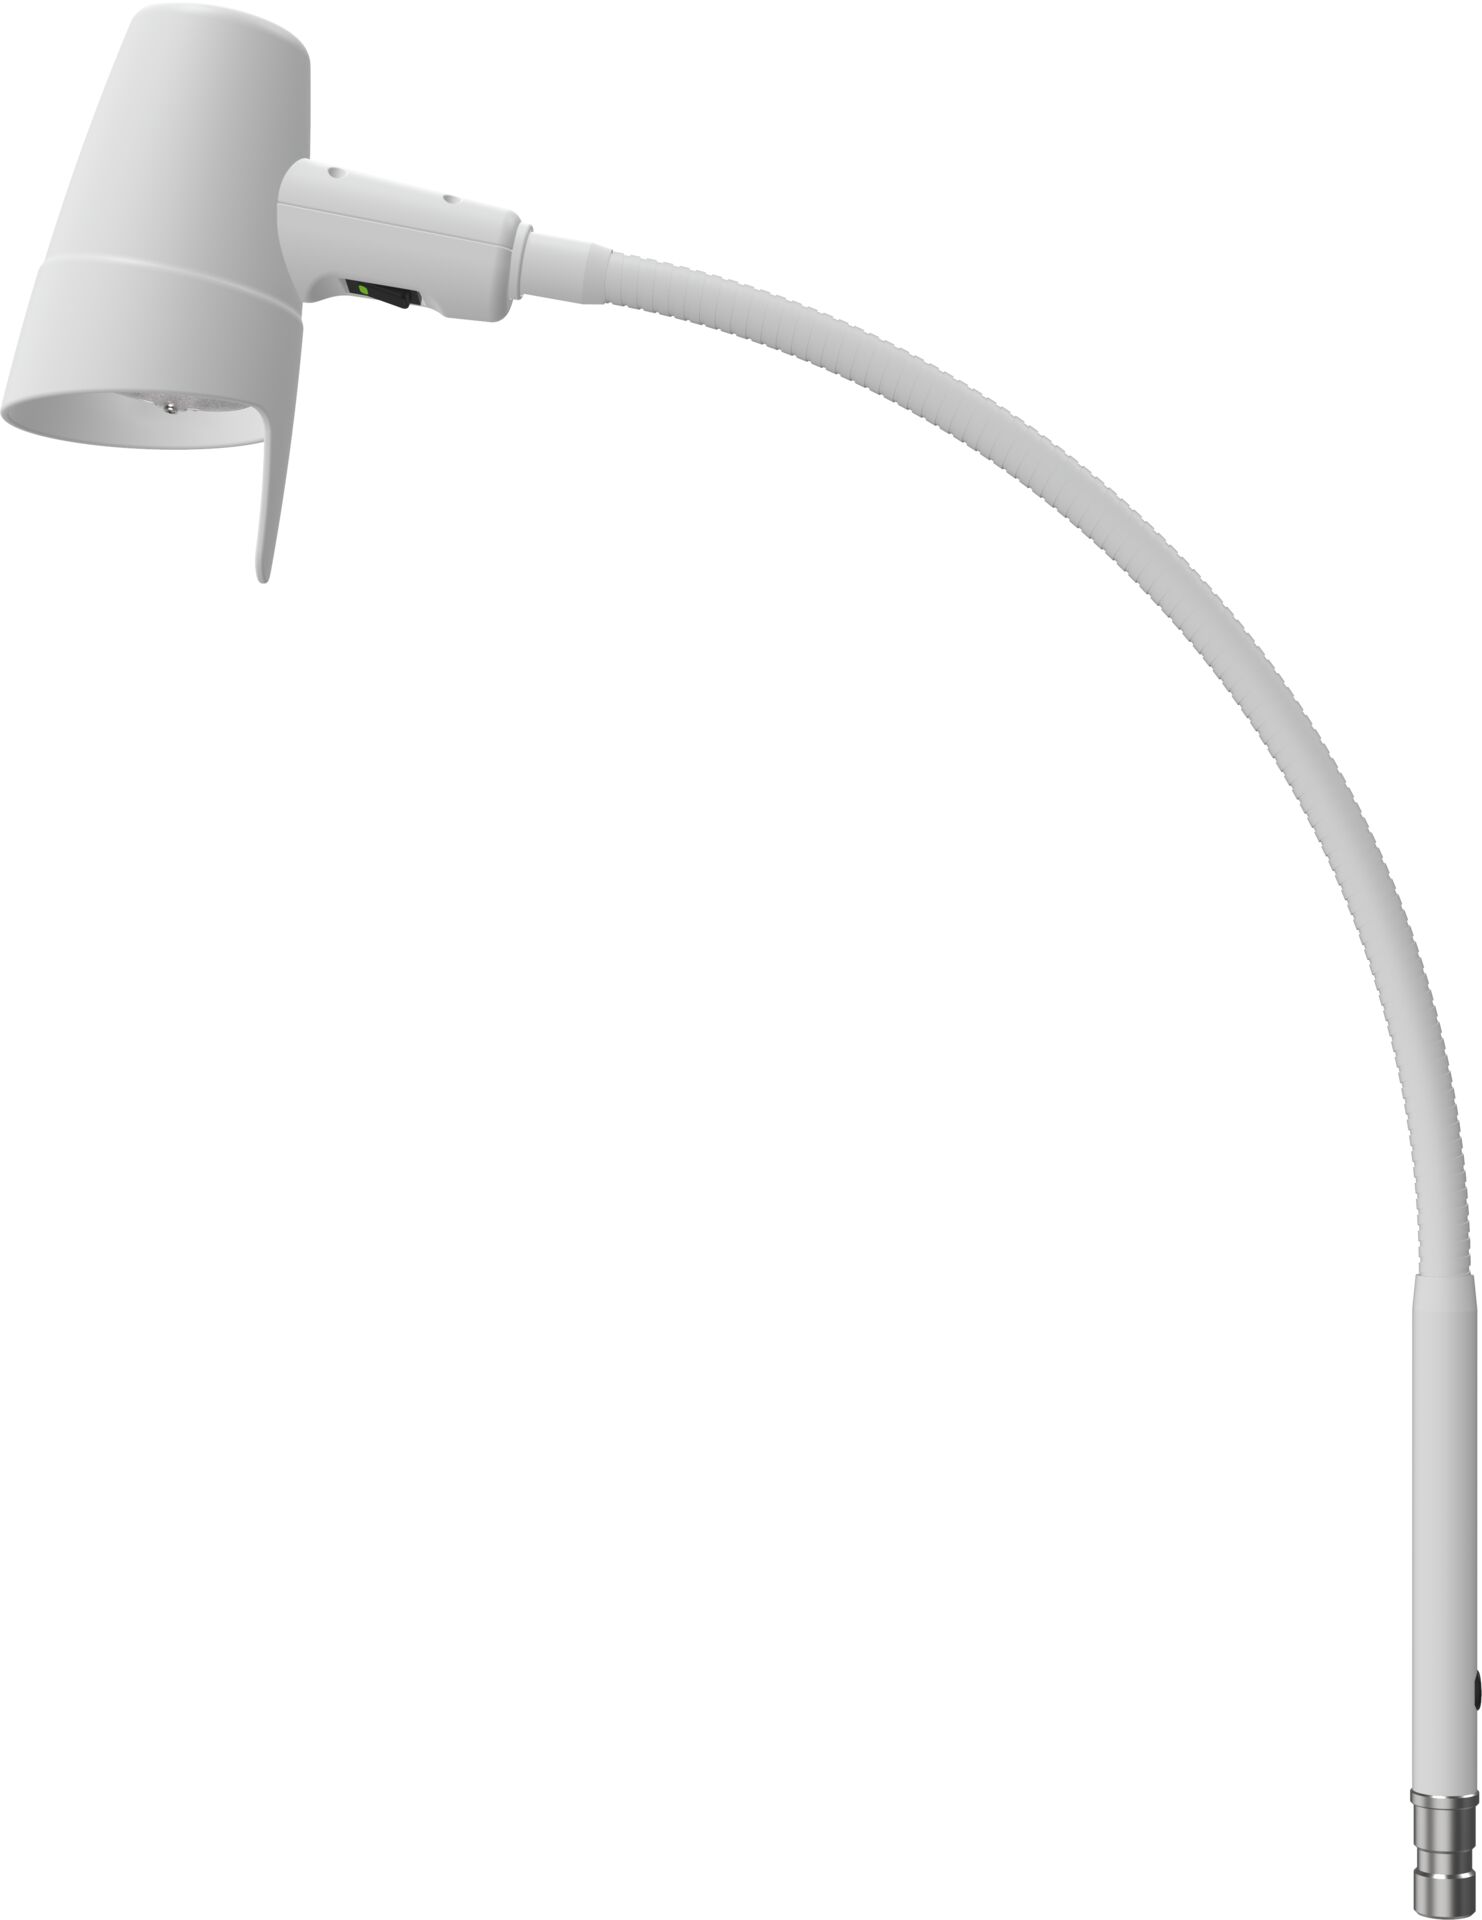 LED lâmpada de leitura serie 4 braço flex- branco